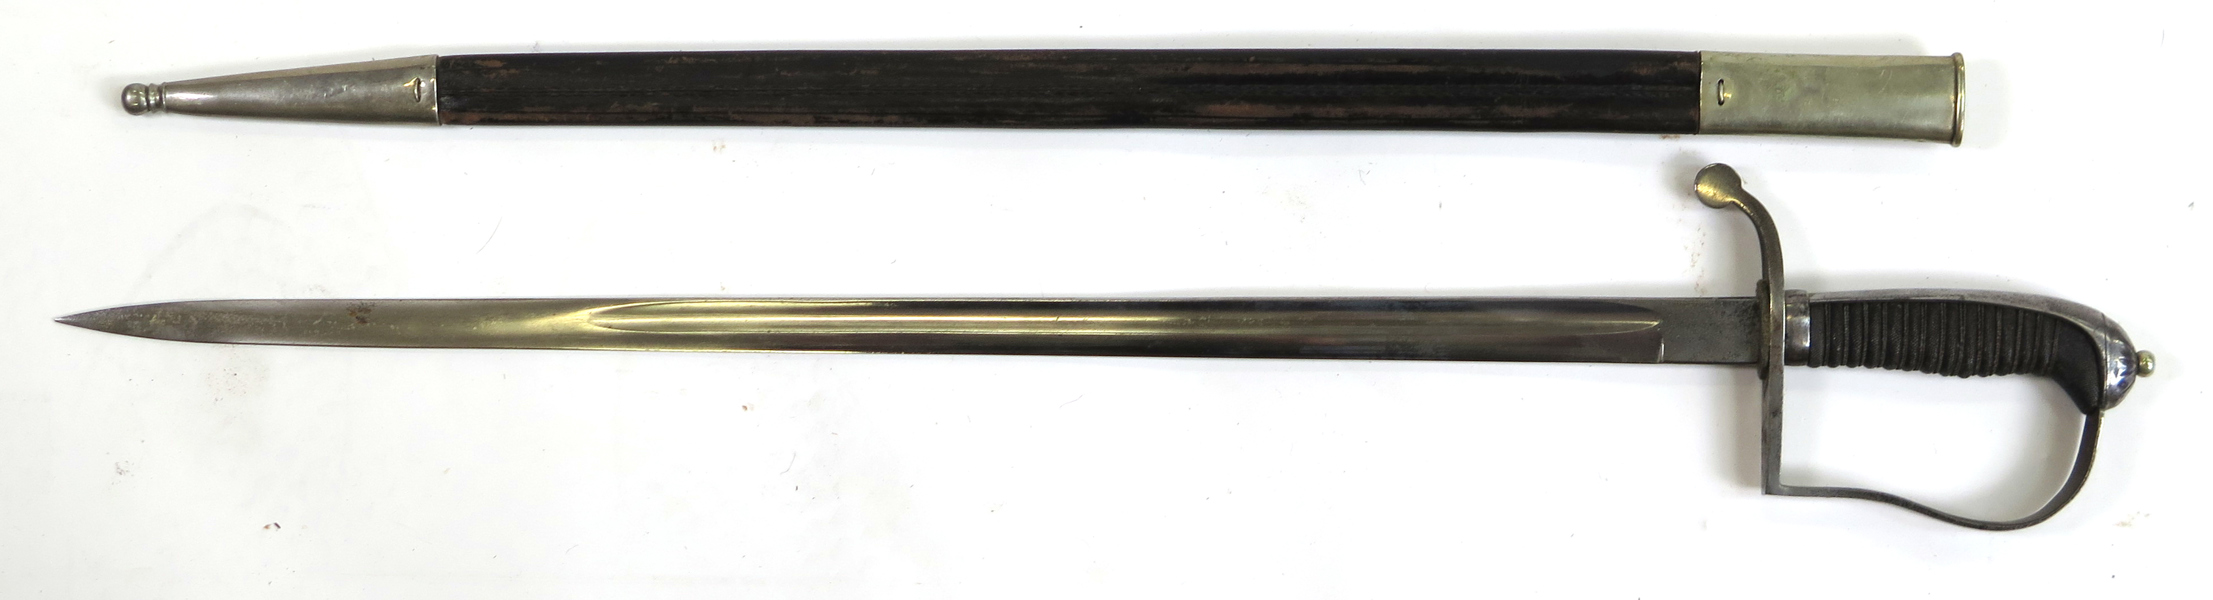 Sabel (pallasch) i balja, 18-1900-tal, förnicklad klinga, kavel med rockaskinn, total  l 81 cm, balja något krympt_29586a_8db7305b2be9089_lg.jpeg